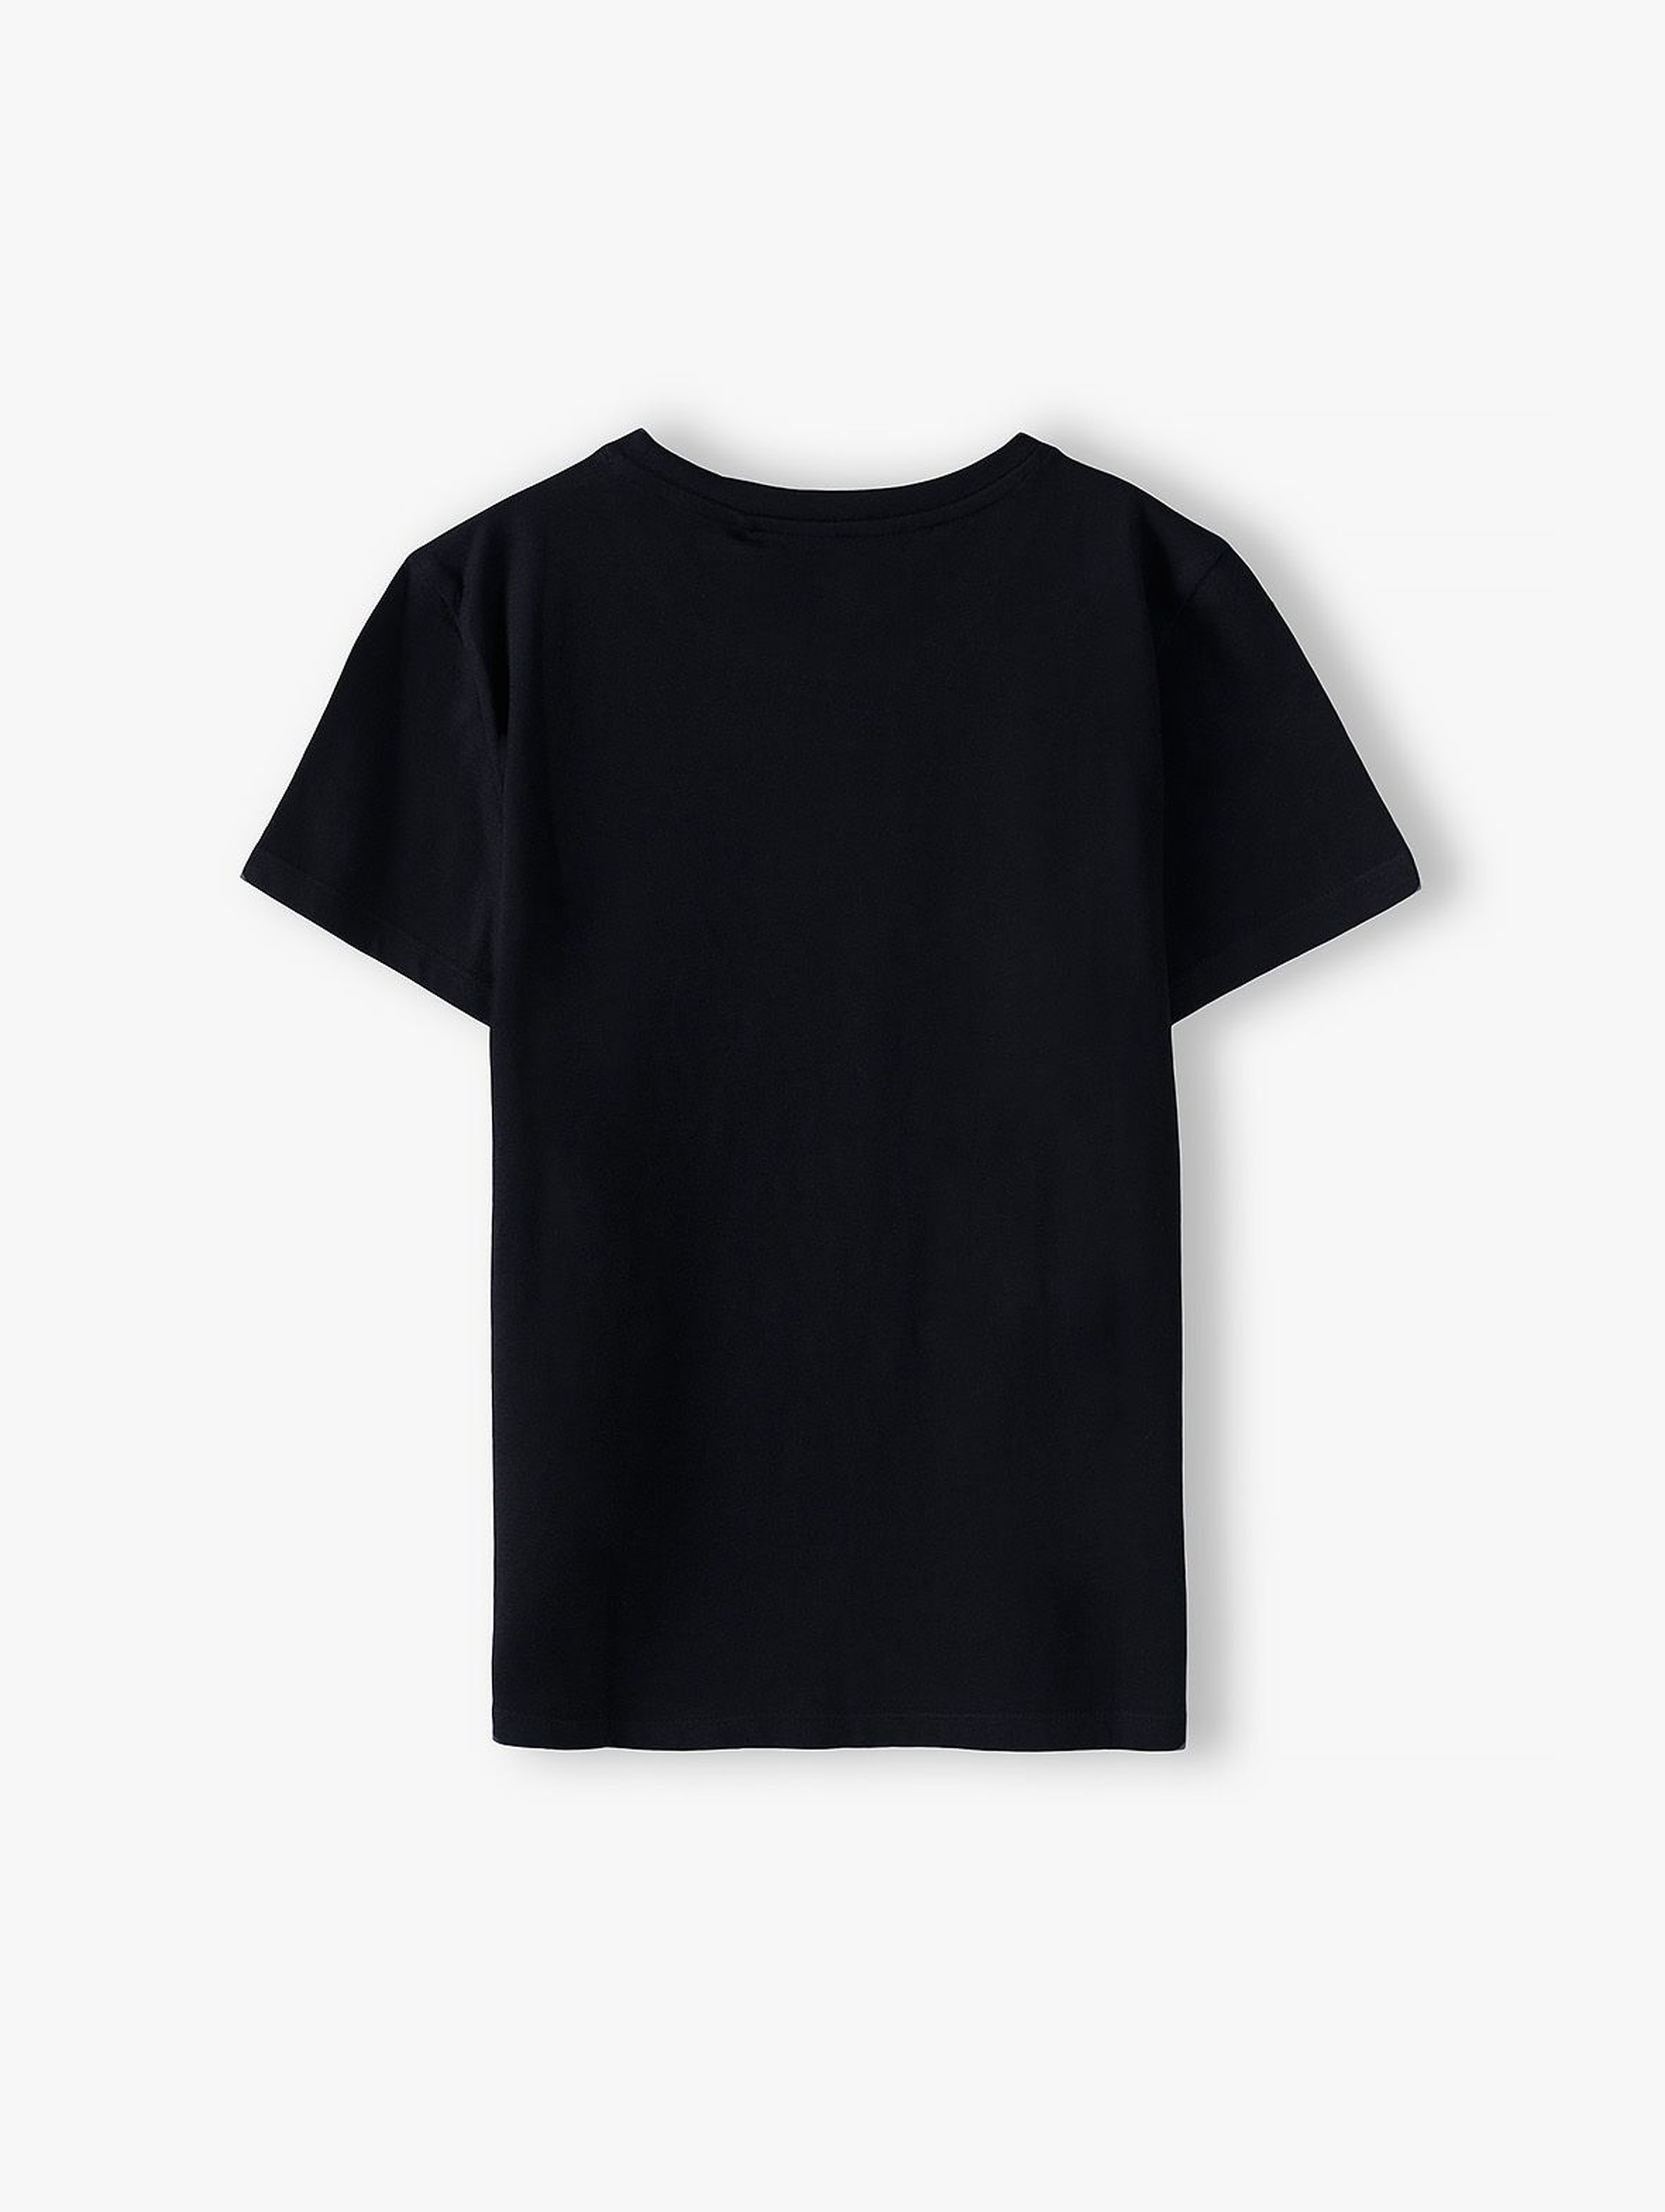 Bawełniany t-shirt chłopięcy w kolorze czarnym z napisem